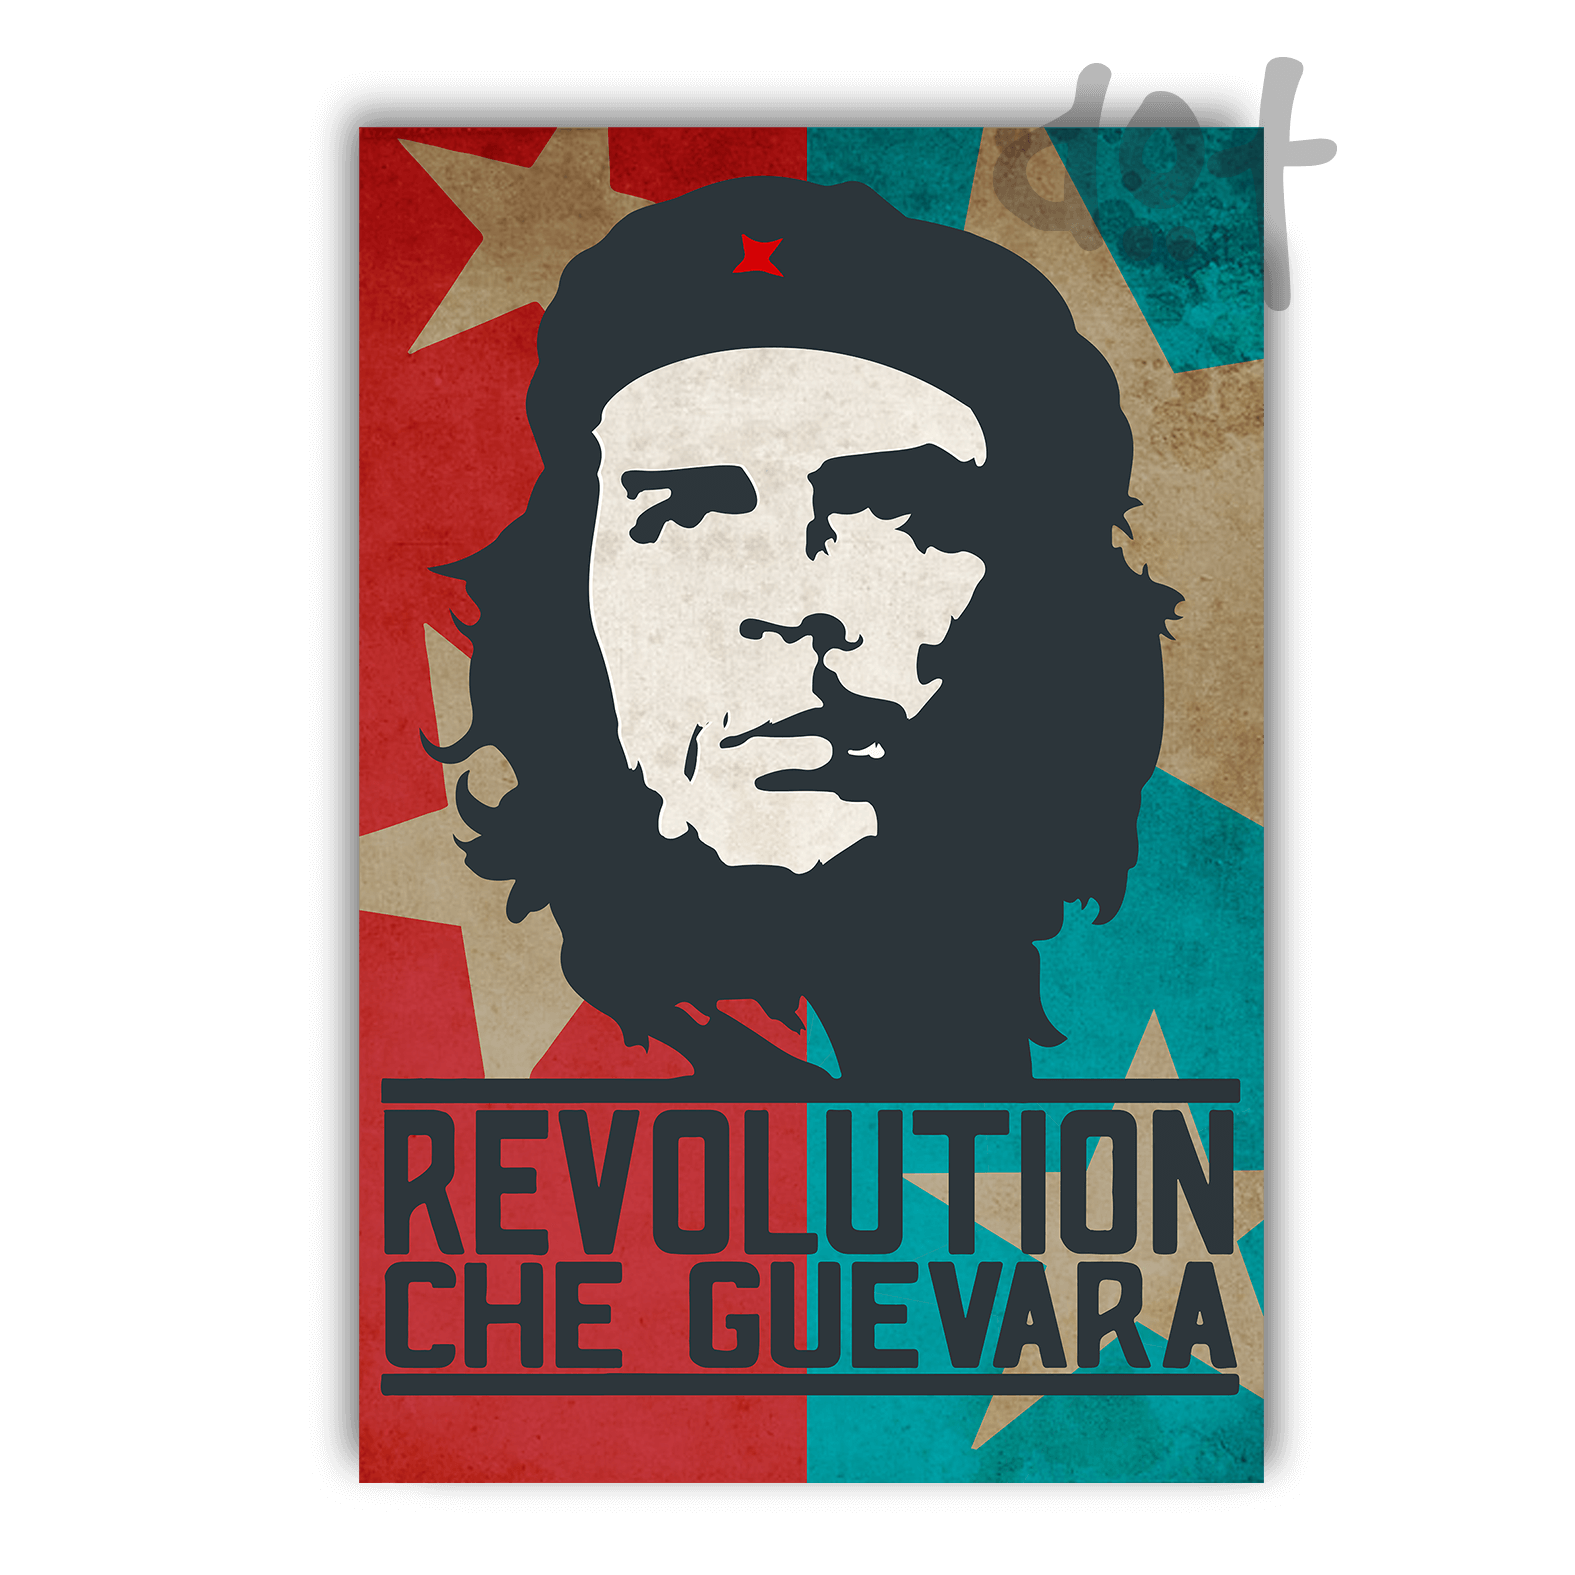 Che Guevara tidak ada latar belakang